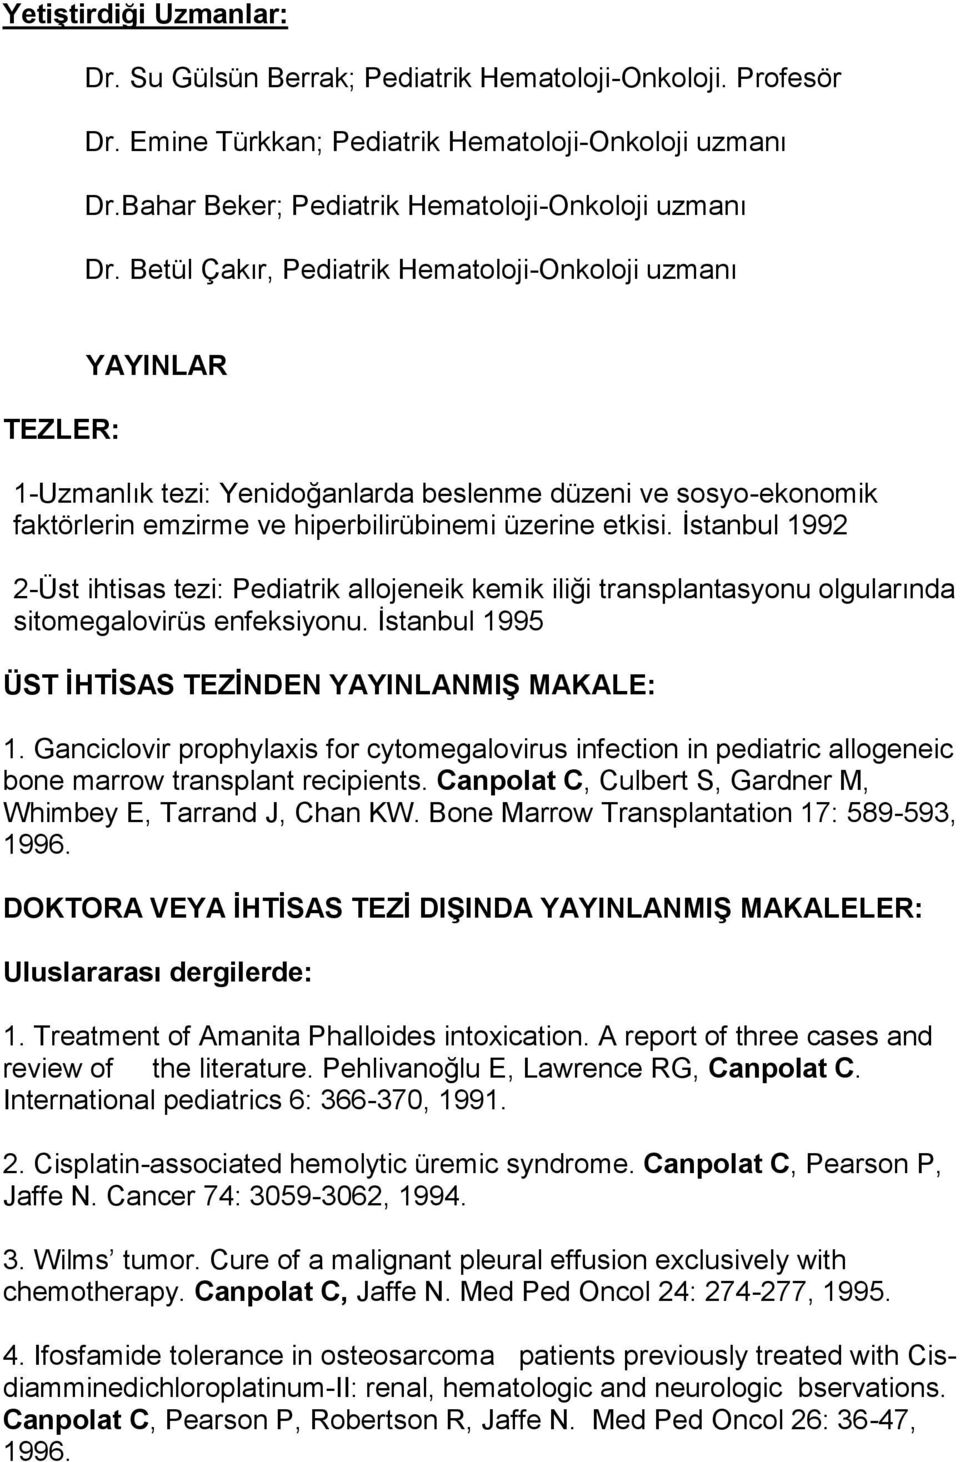 İstanbul 1992 2-Üst ihtisas tezi: Pediatrik allojeneik kemik iliği transplantasyonu olgularında sitomegalovirüs enfeksiyonu. İstanbul 1995 ÜST İHTİSAS TEZİNDEN YAYINLANMIŞ MAKALE: 1.